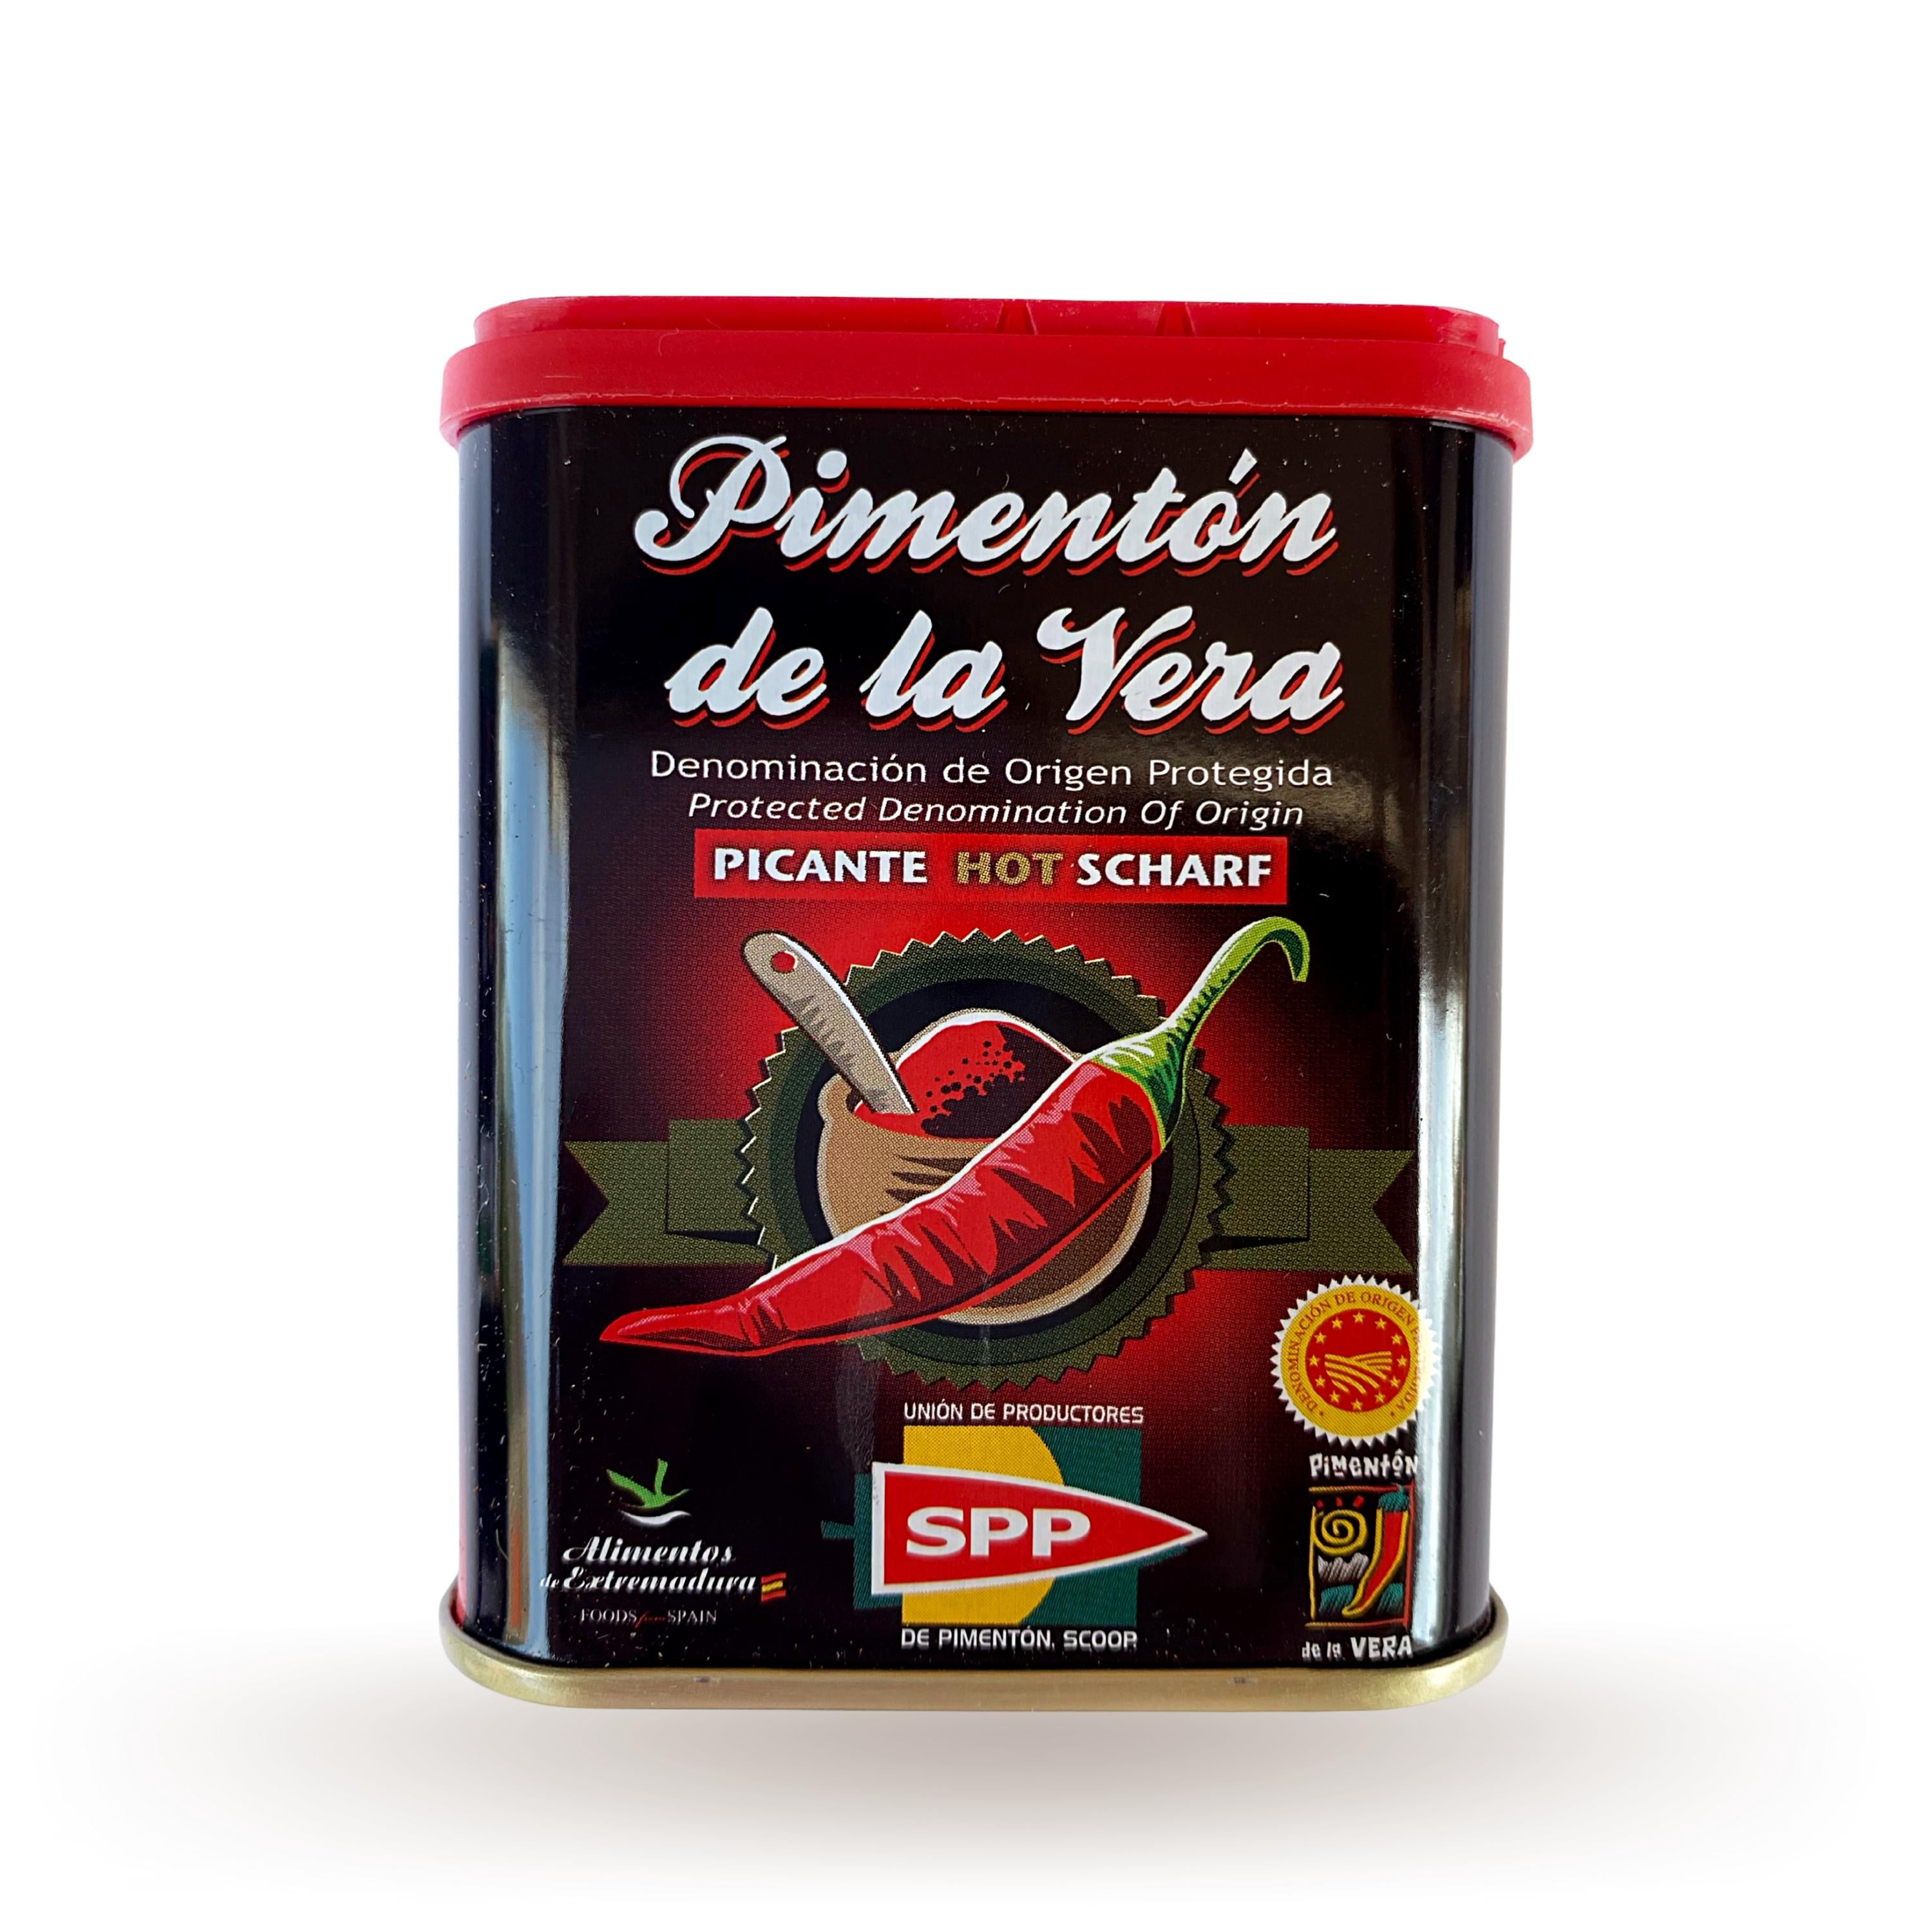 Smoked Paprika Hot DE LA VERA 75g (Pimentón de la Vera Picante)